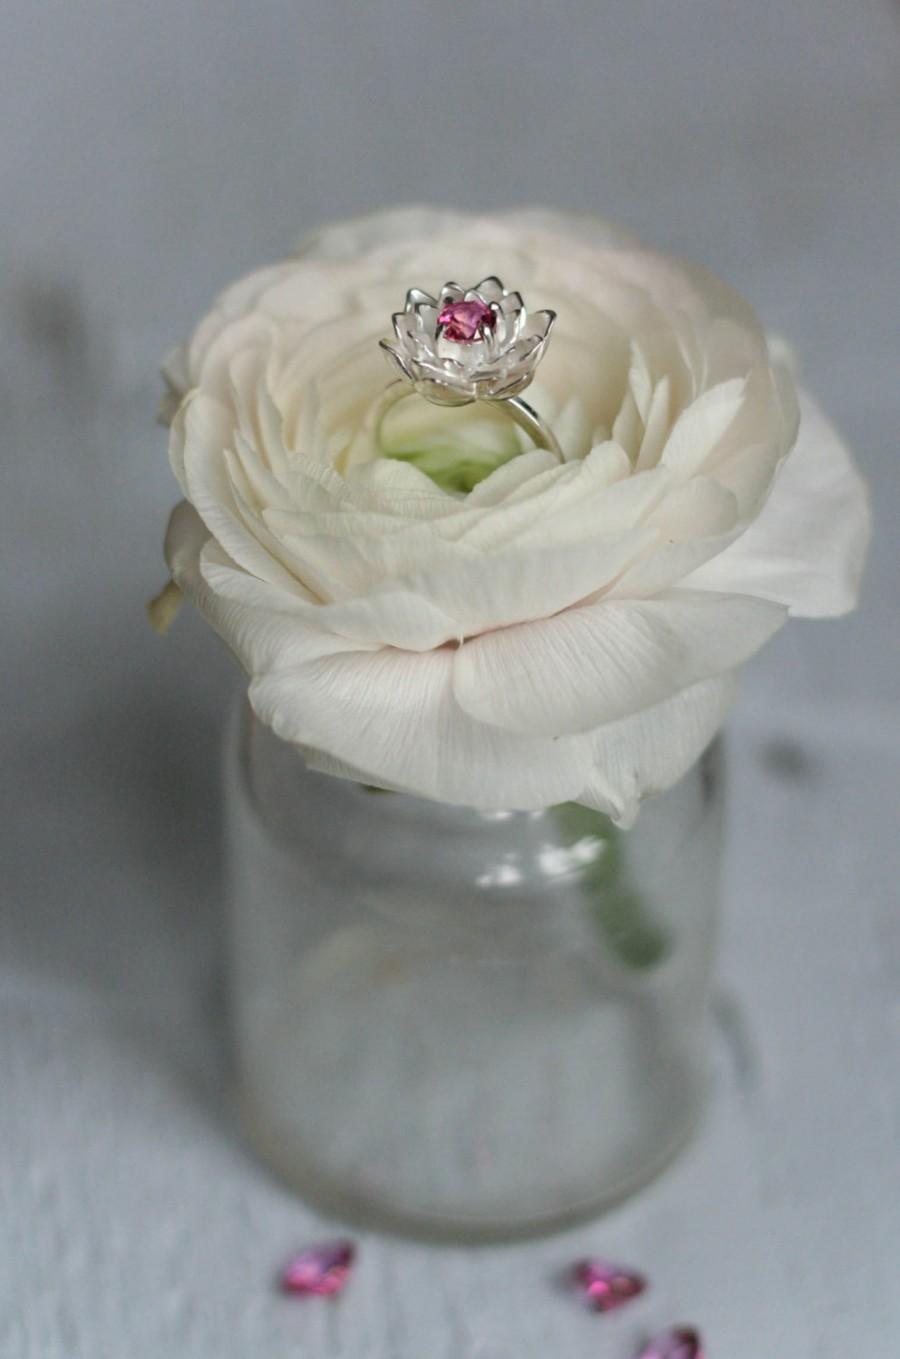 زفاف - Flower engagement ring, pink topaz ring, proposal ring, pink gemstone ring, lotus ring, sterling silver ring, promise ring, lotus jewelry